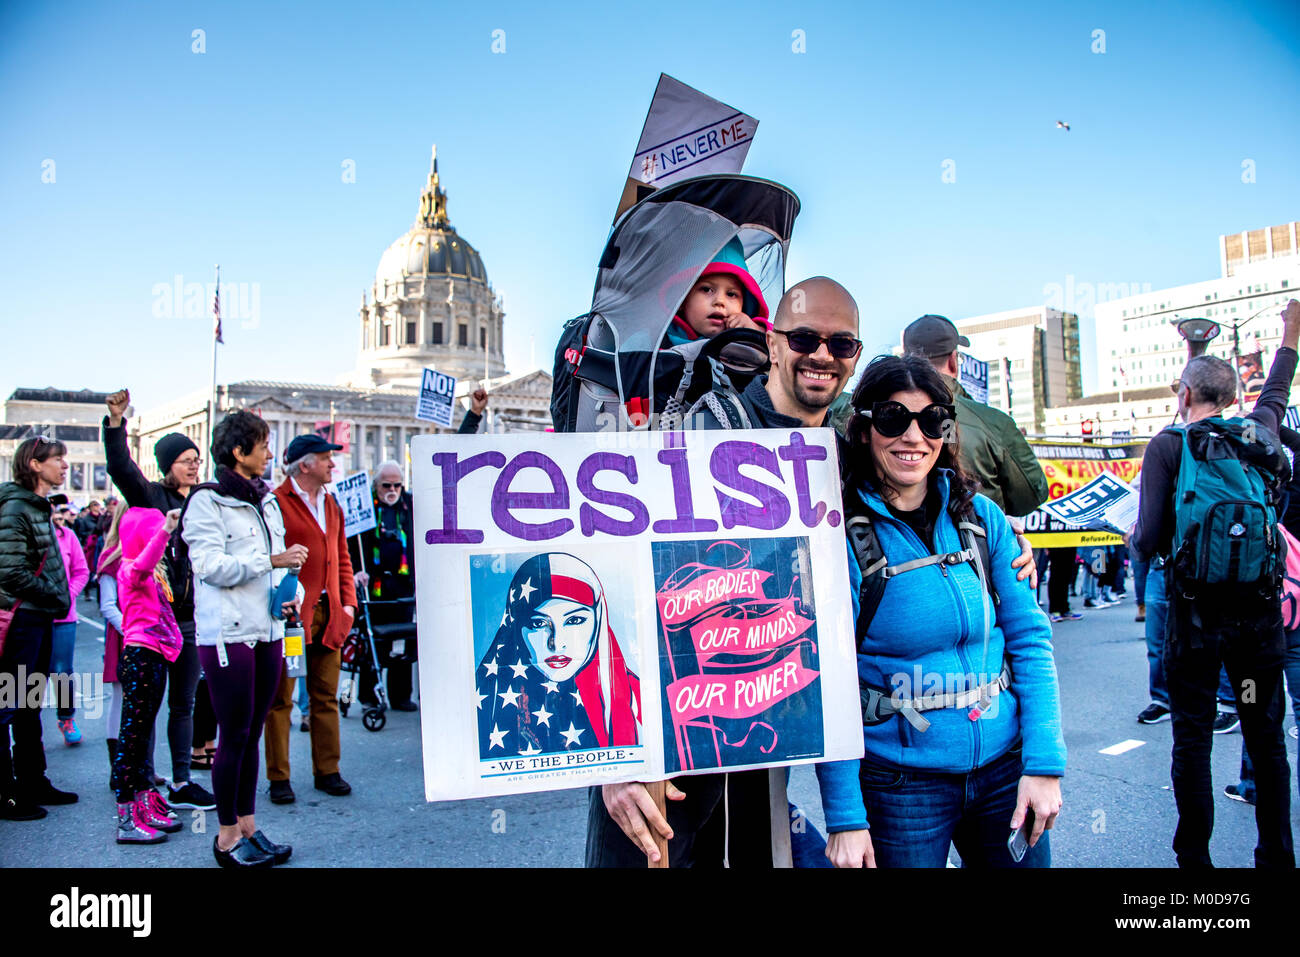 San Francisco, California, EEUU. 20 de enero de 2018. La mujer en marzo de 2018 San Francisco, organizado por la marcha de las mujeres en el área de la bahía. Una familia se prepara para marzo, mamá y papá con el bebé en la espalda en una mochila portabebés con su propio cartel #neverme y el padre tiene un cartel que dice "resistir", que incluye el "Nuestros cuerpos, nuestras mentes, nuestro poder" y "Nosotros el pueblo" signos se hizo popular durante el pasado marzo de la mujer. Foto de stock